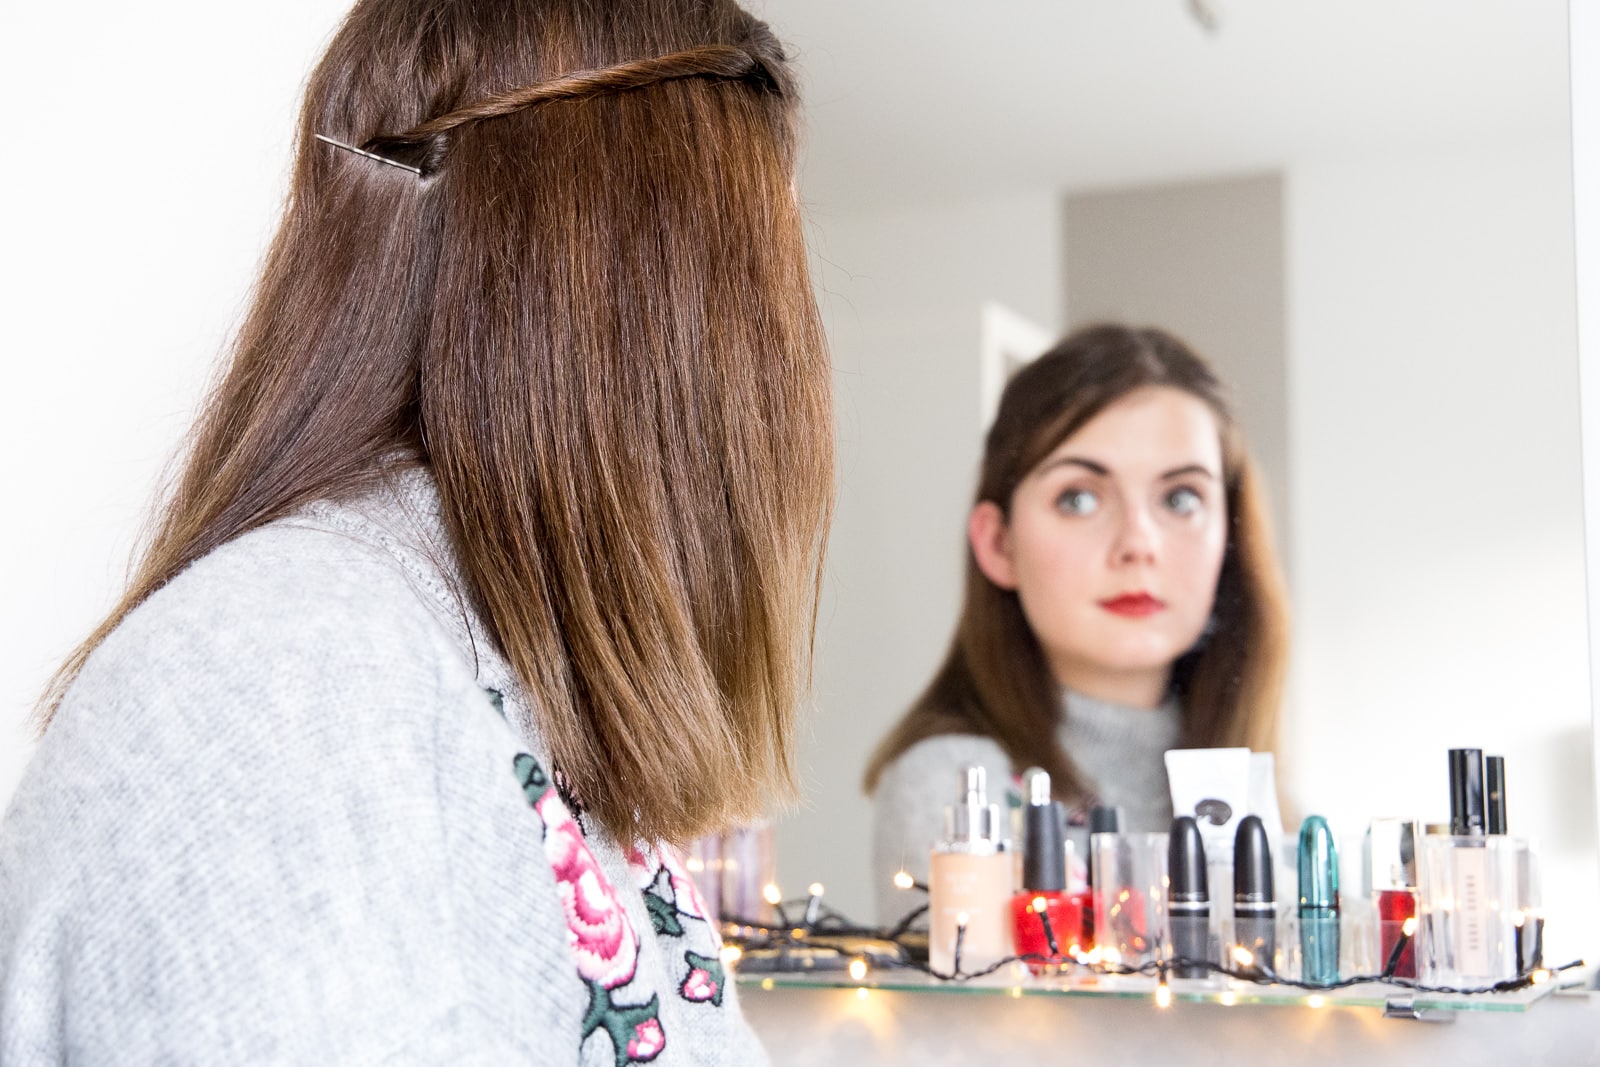 Get ready with me: Frisur & Make-Up für Weihnachten 2016